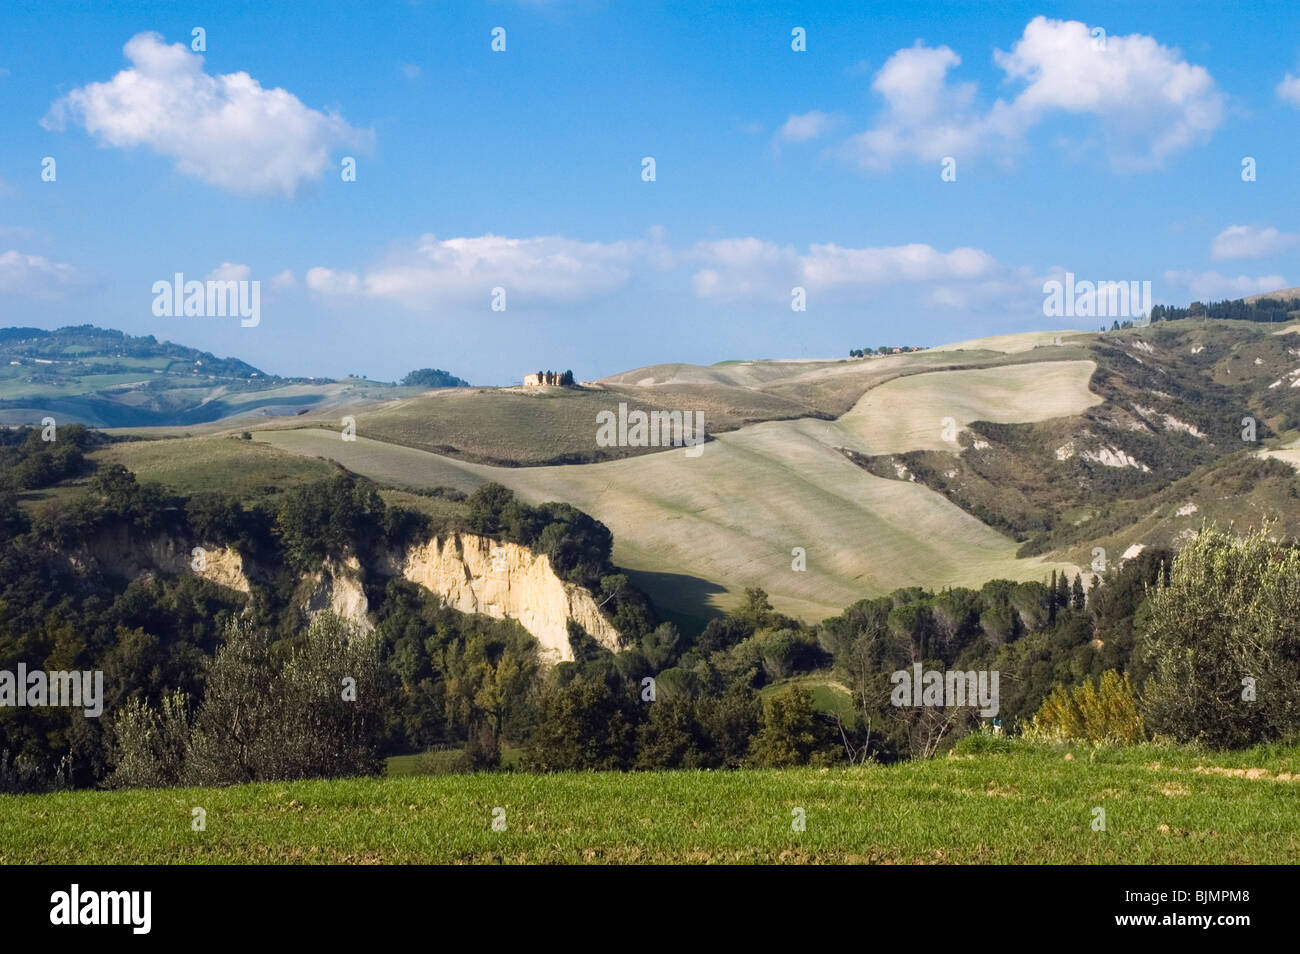 Hilly landscape, Volterra-Mazzola, Tuscany, Italy, Europe Stock Photo